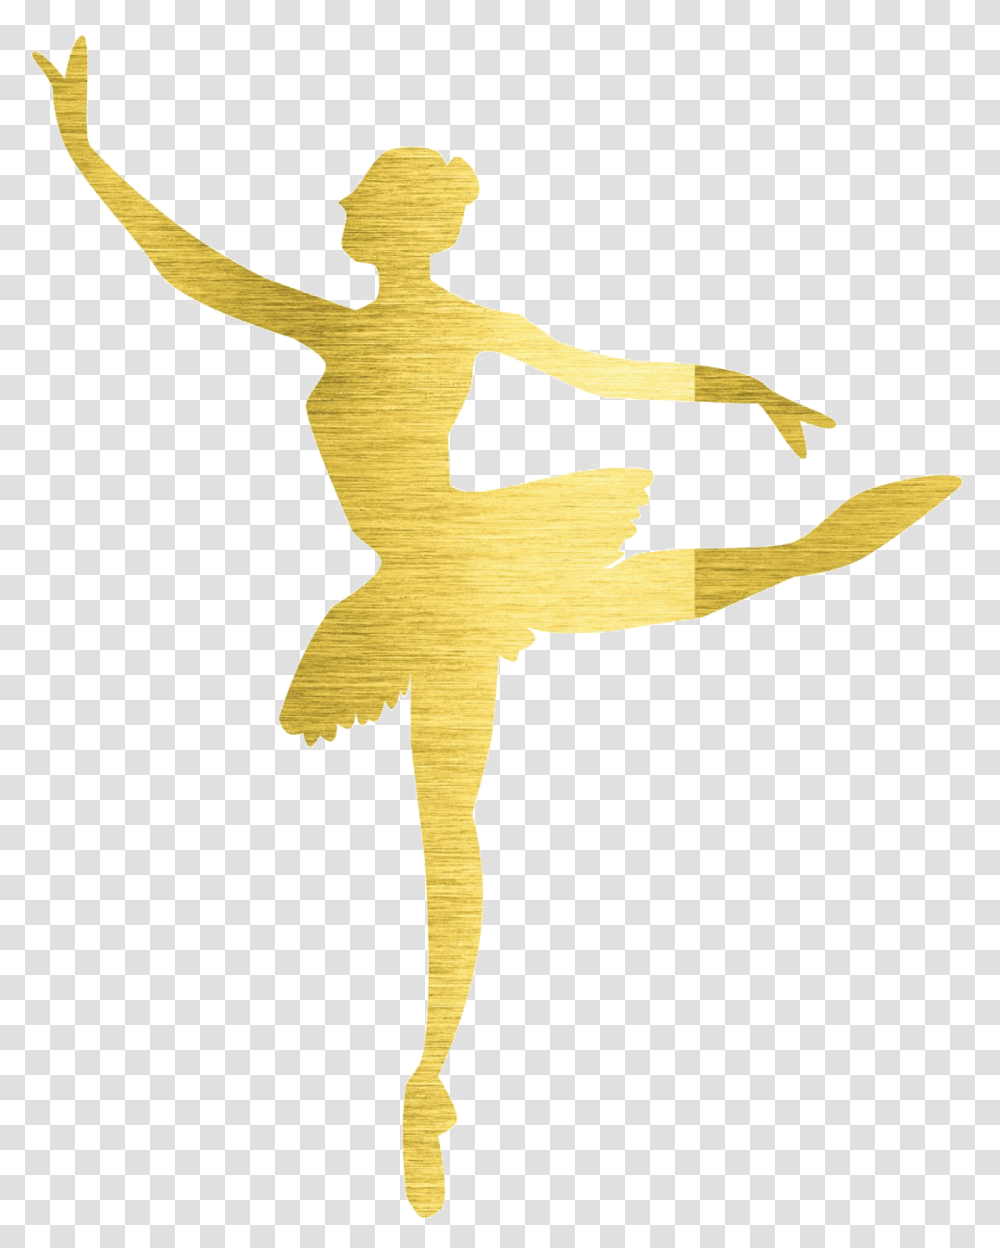 Ballerina Image Bailarina Dourada Desenho, Cross, Dance, Dance Pose Transparent Png